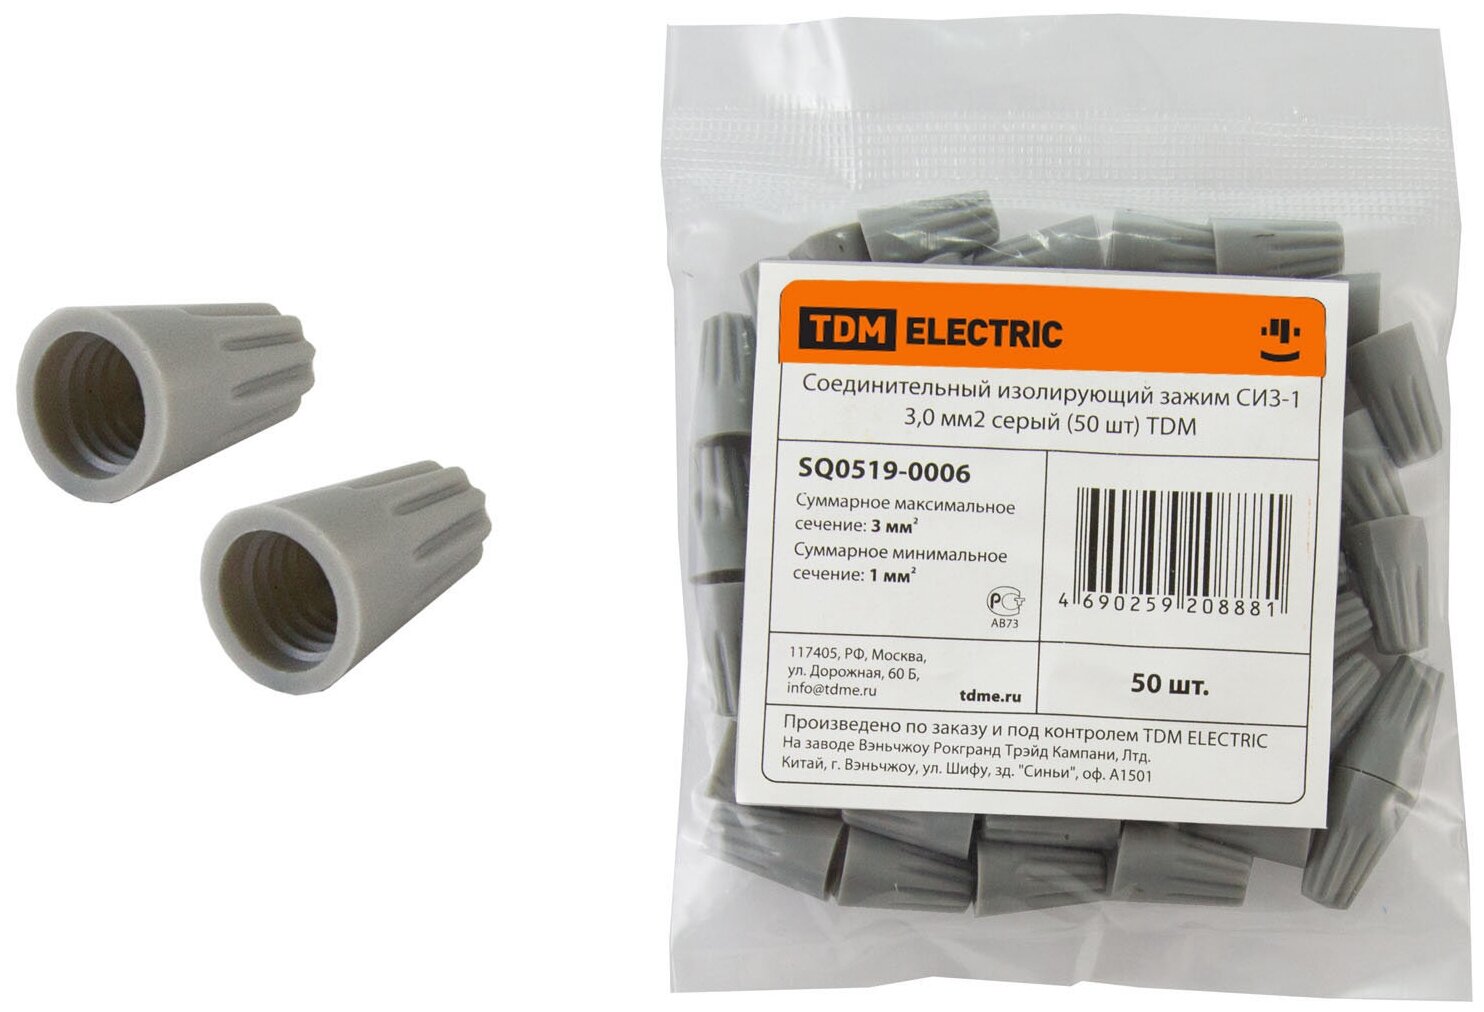 Соединительный изолирующий зажим СИЗ-1 30 мм2 серый (100 шт) TDM Electric (SQ0519-0001)